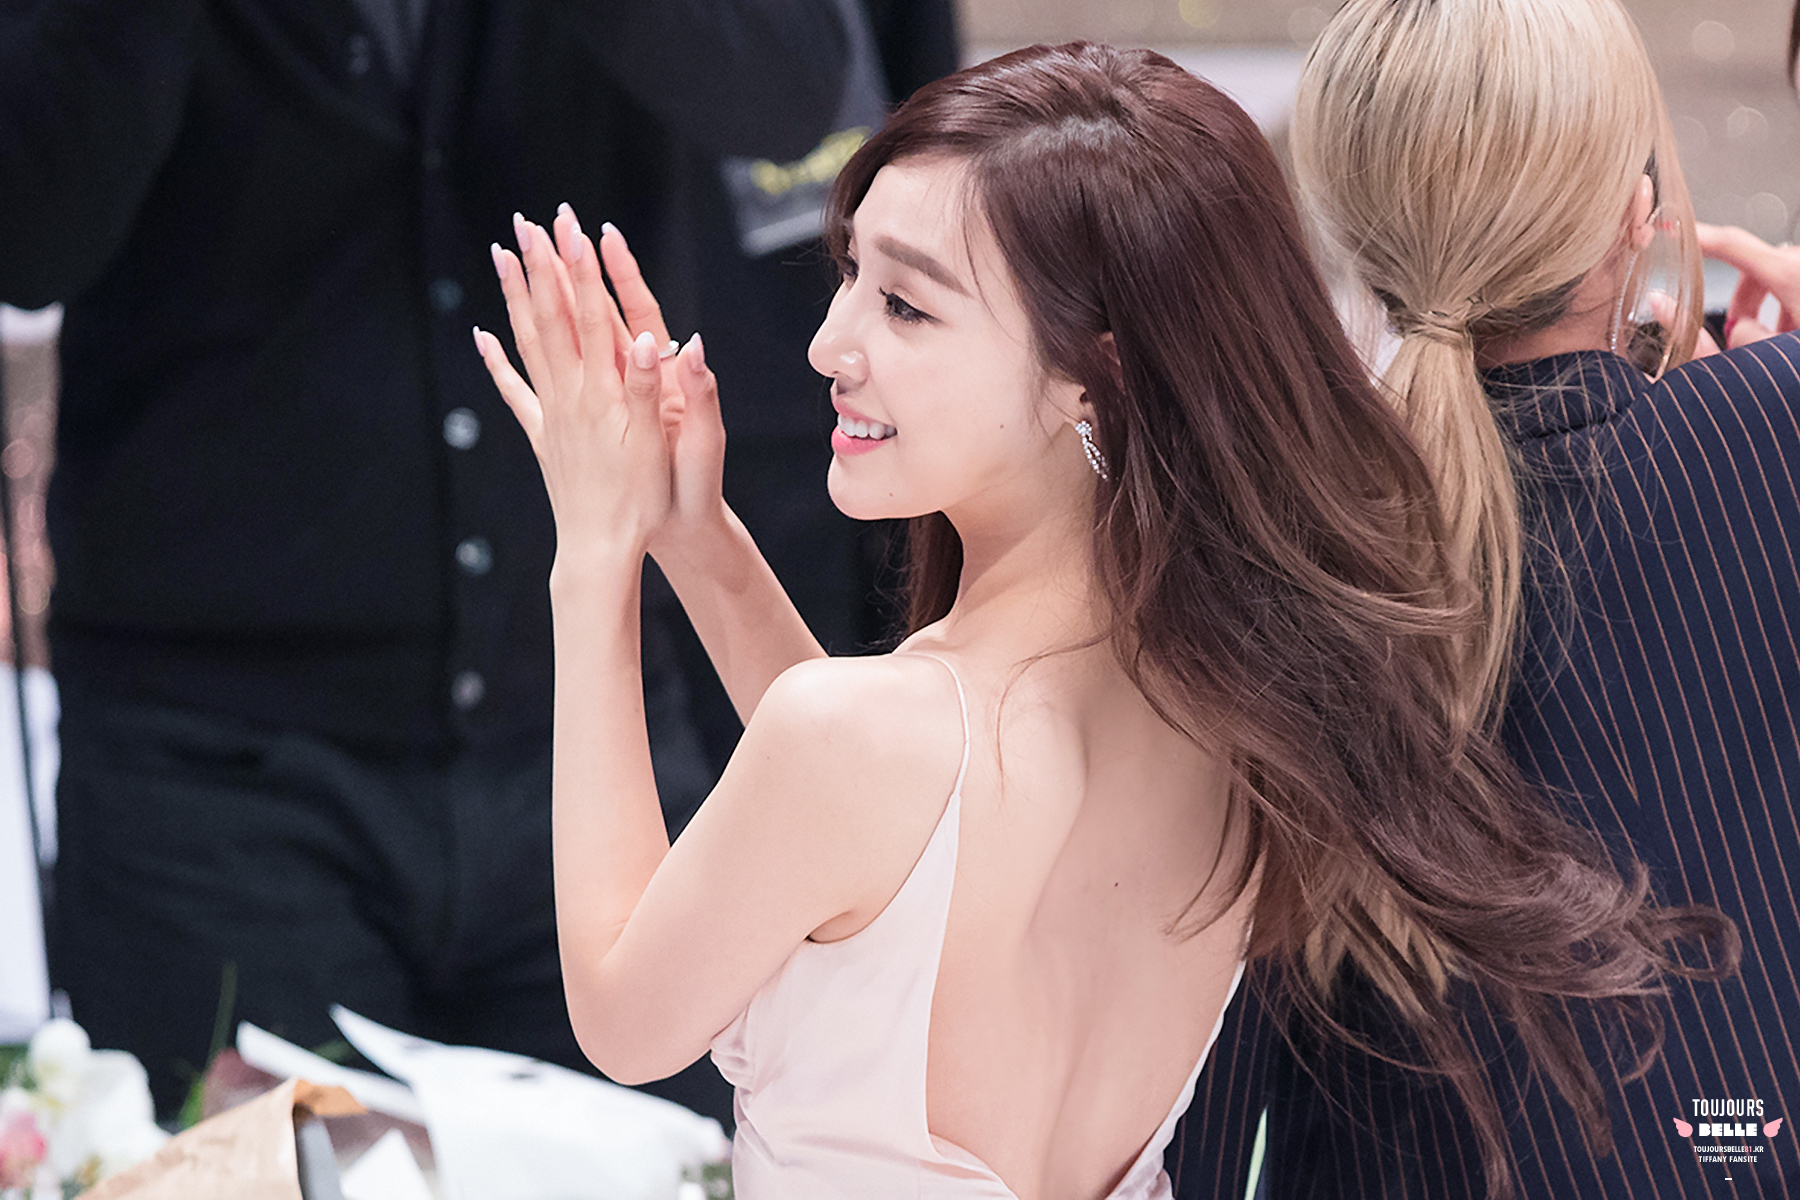 [PIC][24-12-2016]Tiffany tham dự và biểu diễn tại “2016 KBS Entertainment Awards” vào hôm nay - Page 2 31746918391_02b2af1aff_o